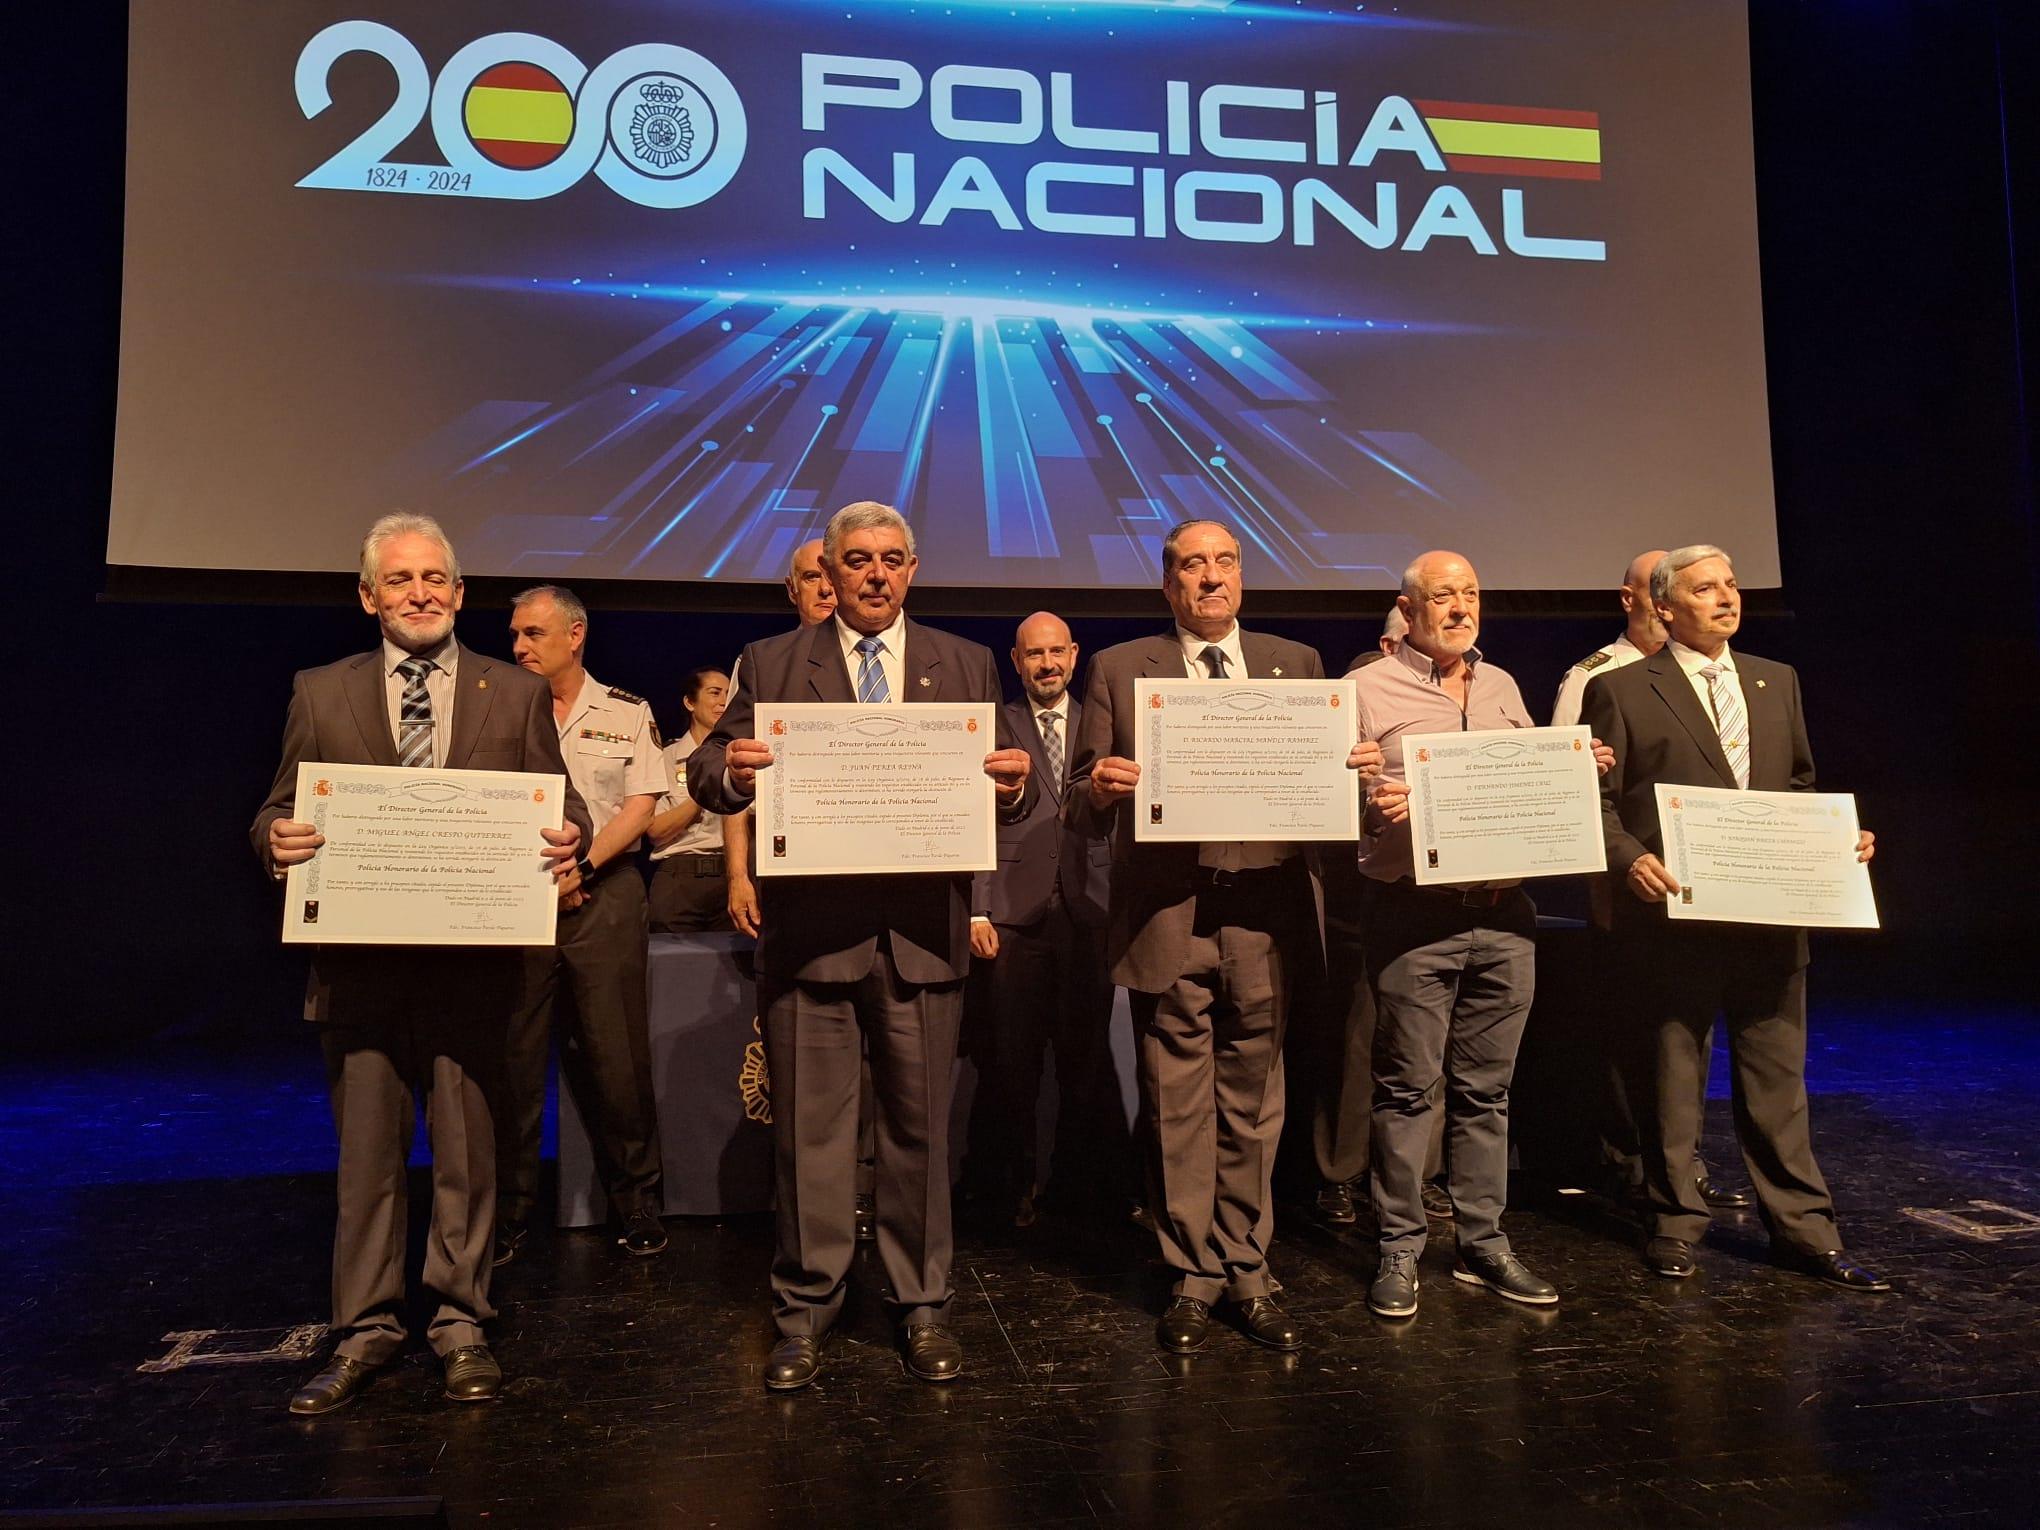 Javier Salas preside el acto de homenaje a los policías nacionales jubilados en Málaga